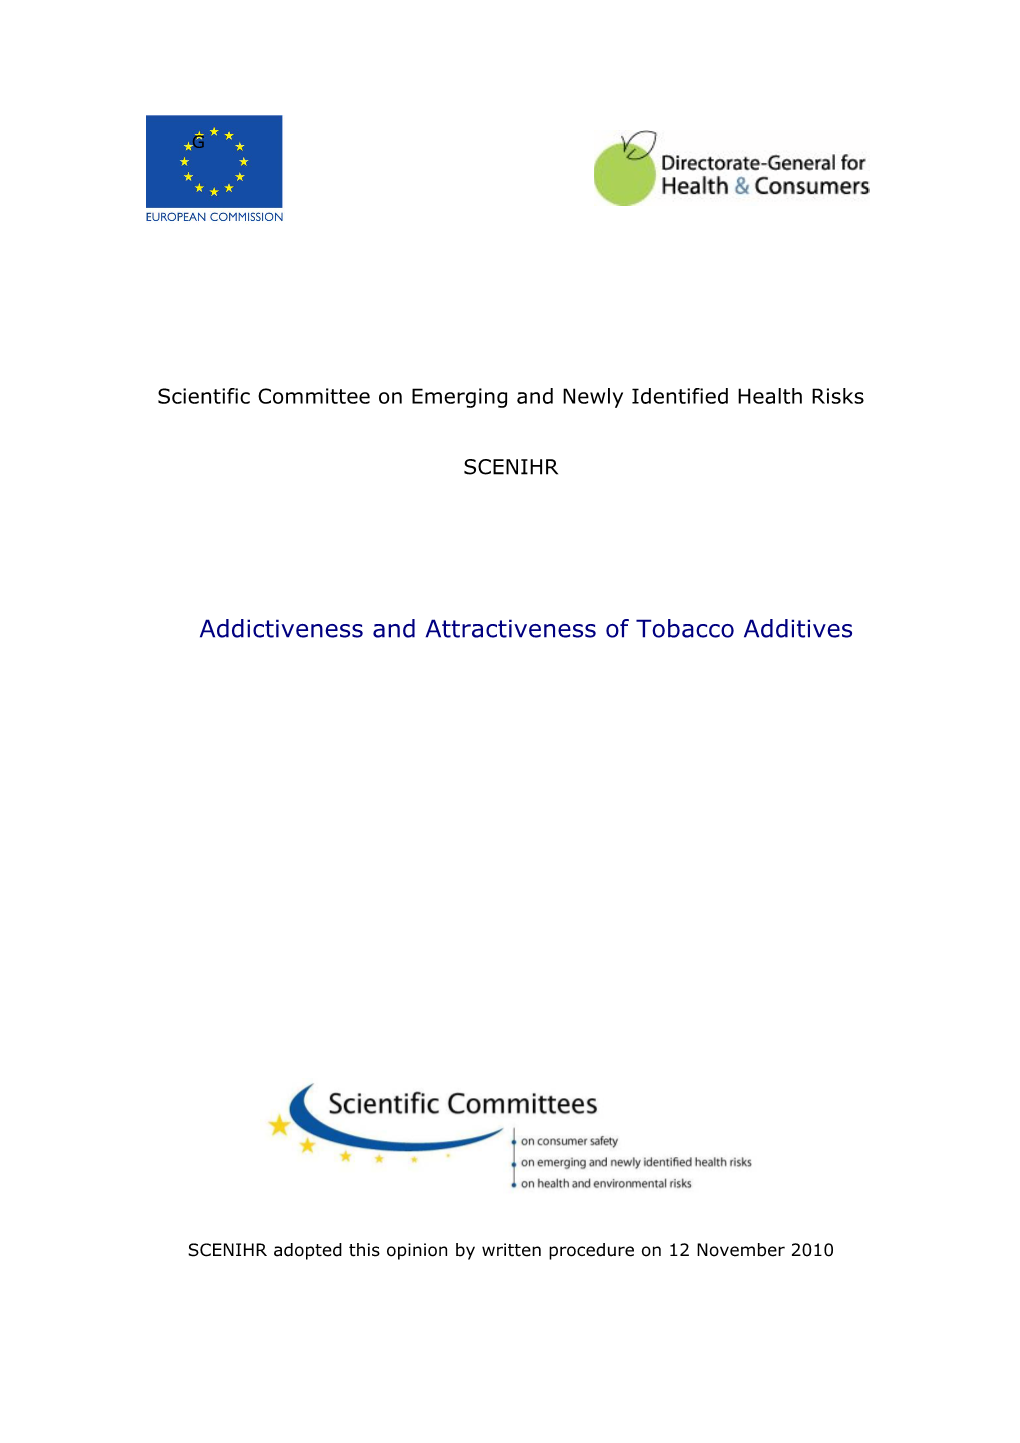 (SCENIHR), "Addictiveness and Attractiveness of Tobacco Additives